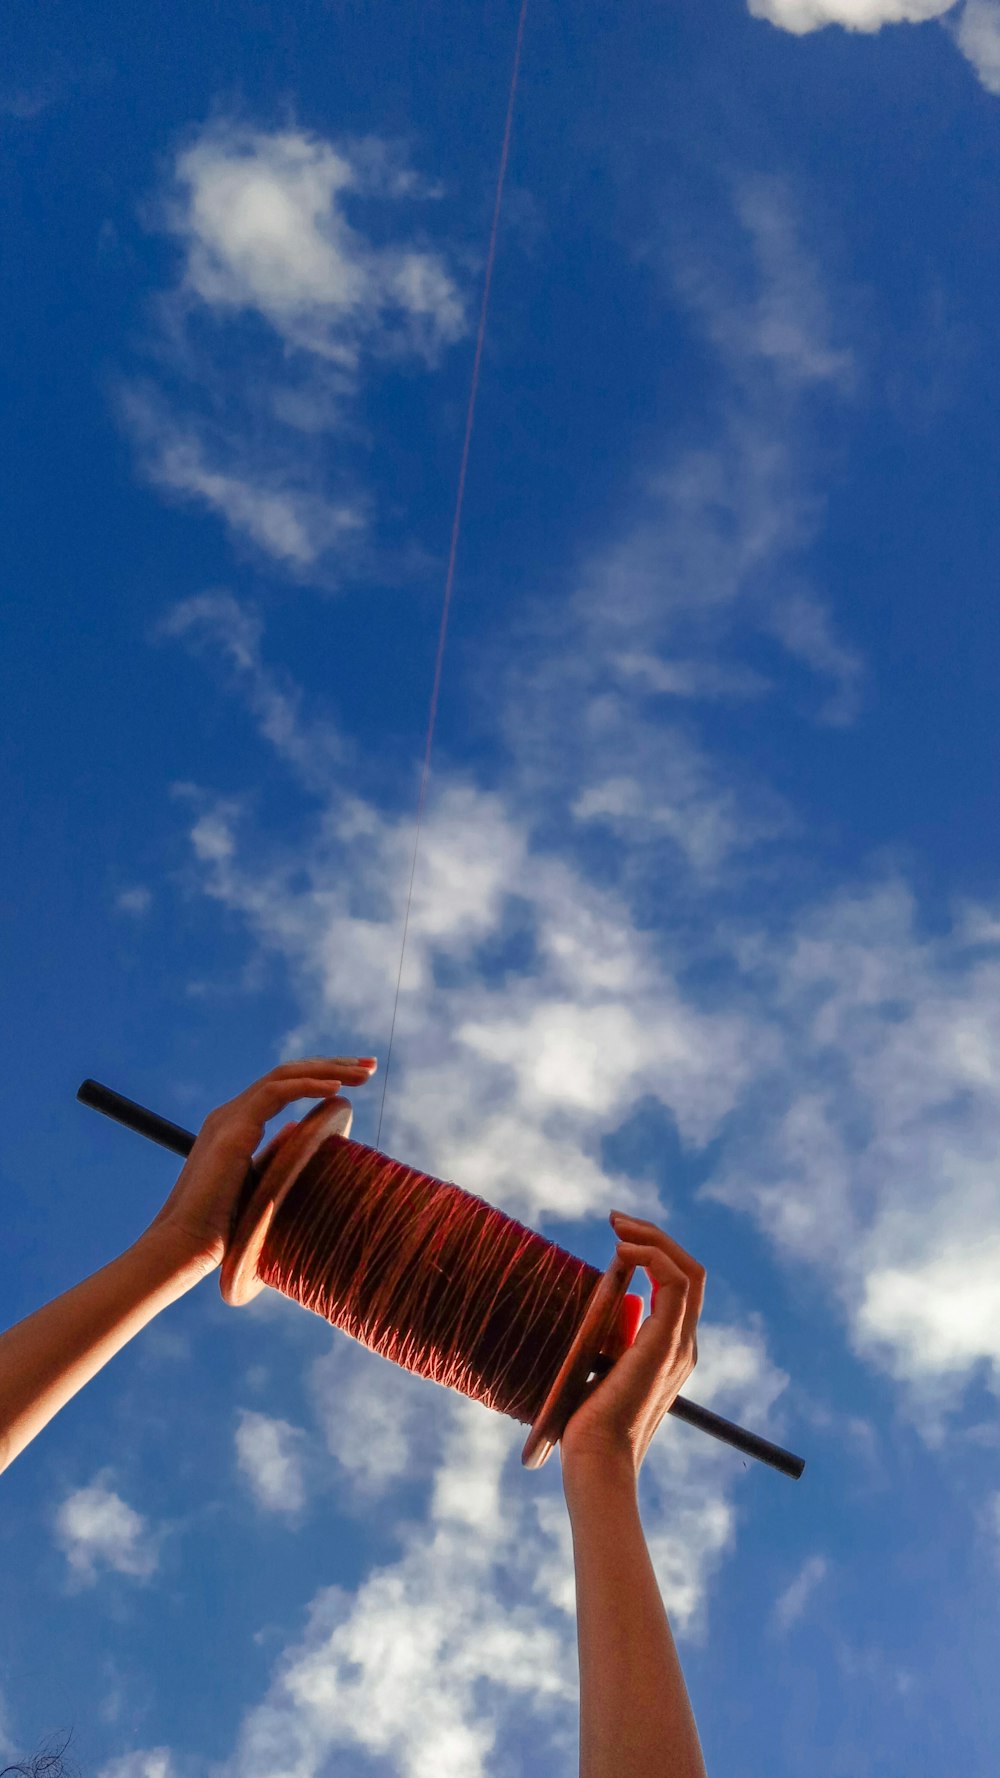 foto dal basso della bobina del filo dell'aquilone sotto il cielo nuvoloso